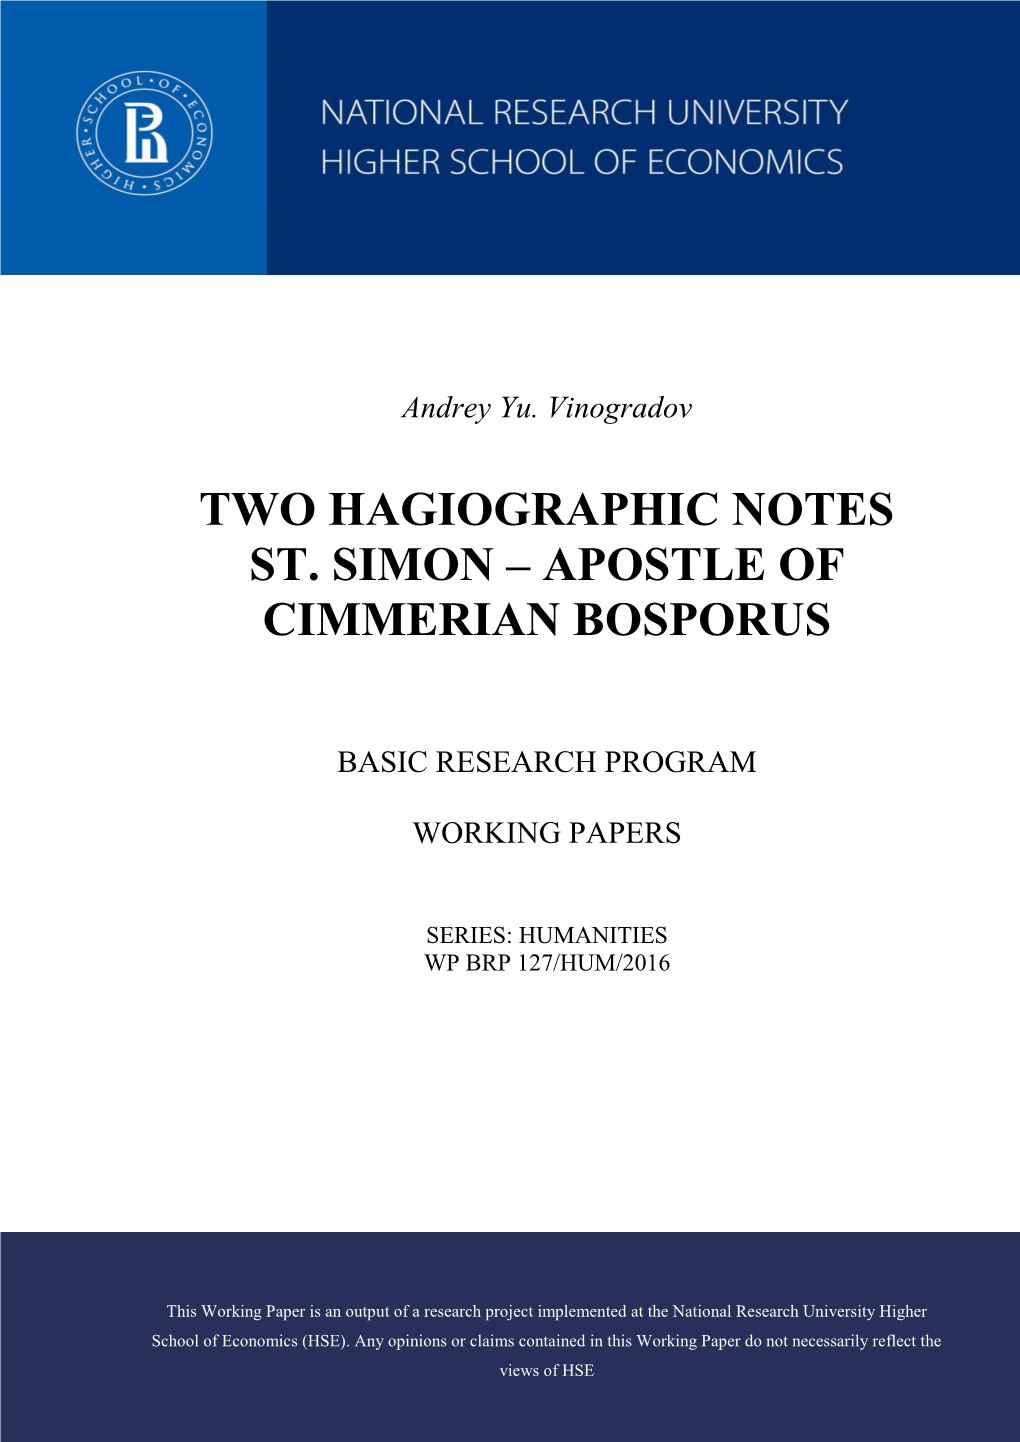 "Two Hagiographic Notes St. Simon – Apostle of Cimmerian Bosporus